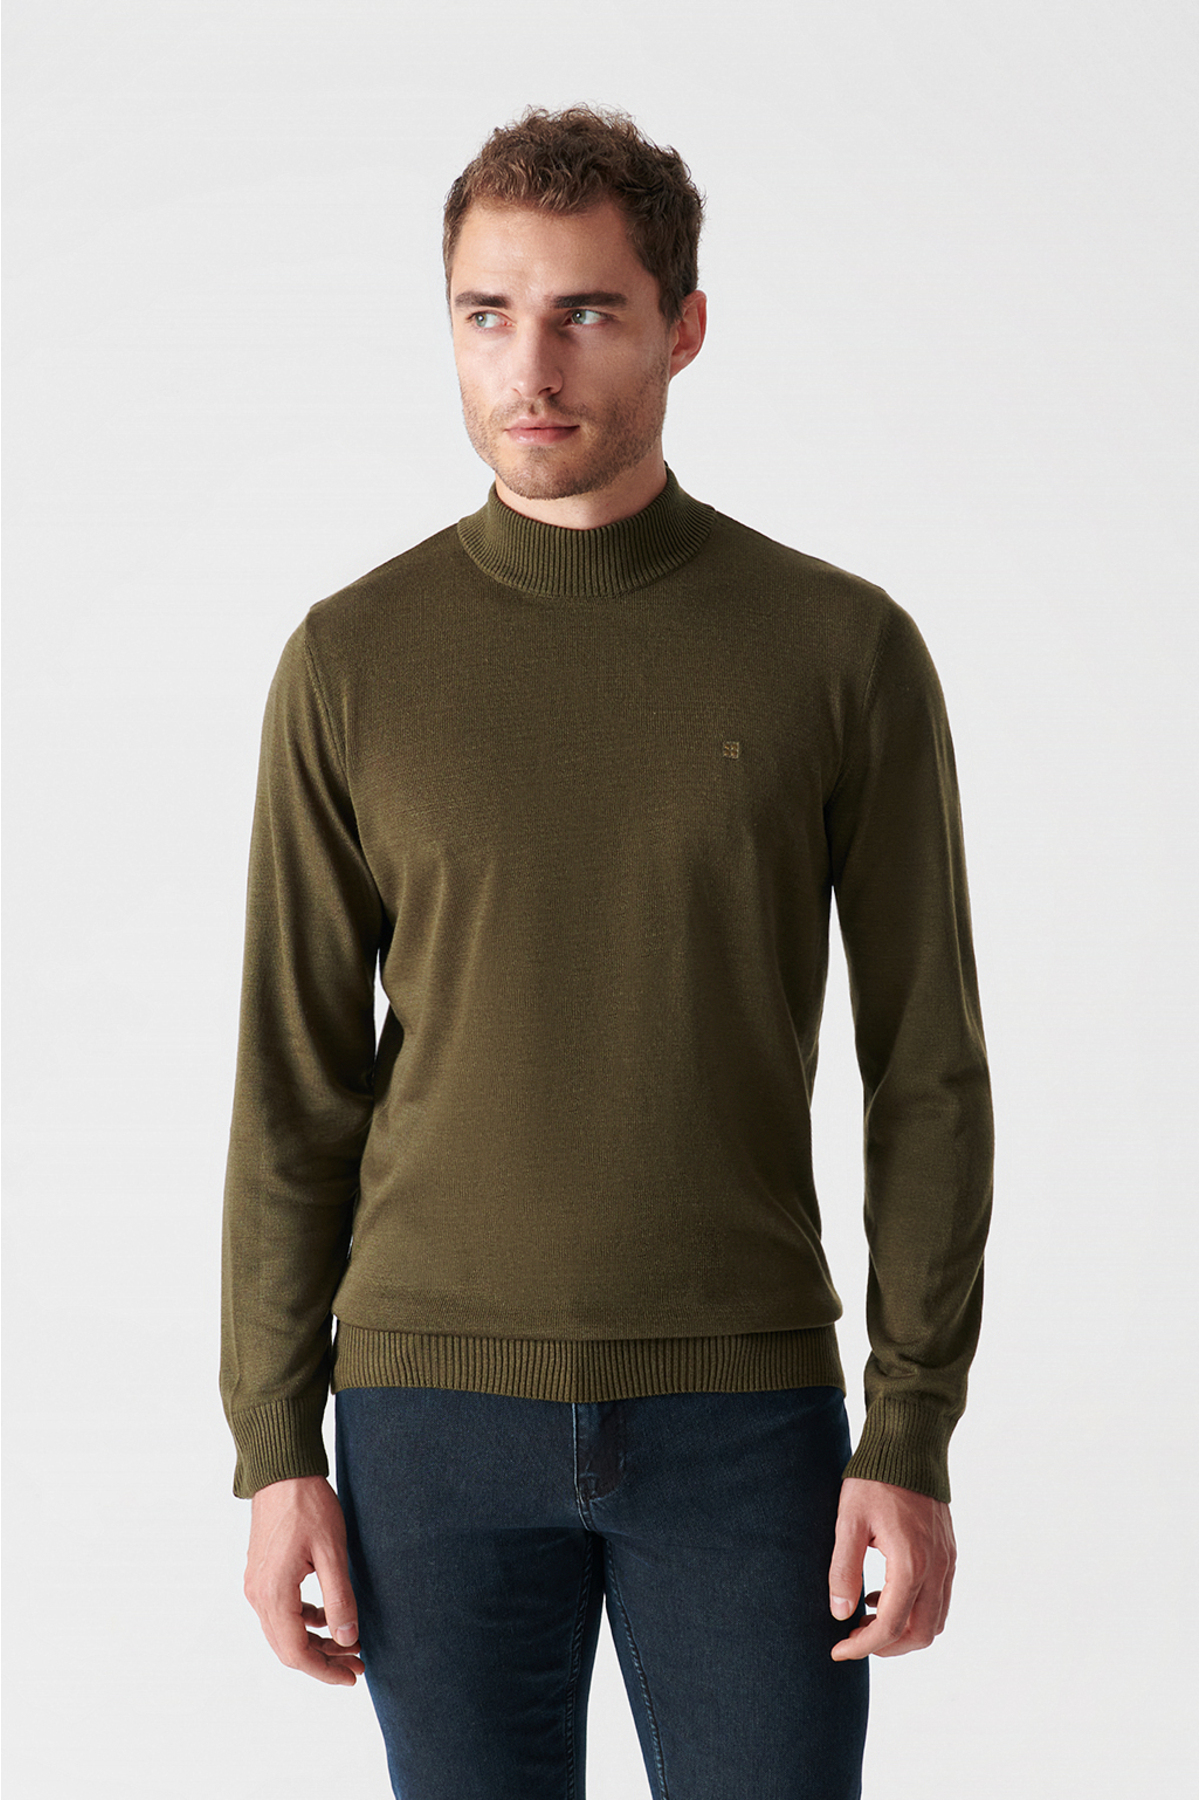 Levně Avva Khaki Unisex Knitwear Sweater Half Turtleneck Non Pilling Regular Fit